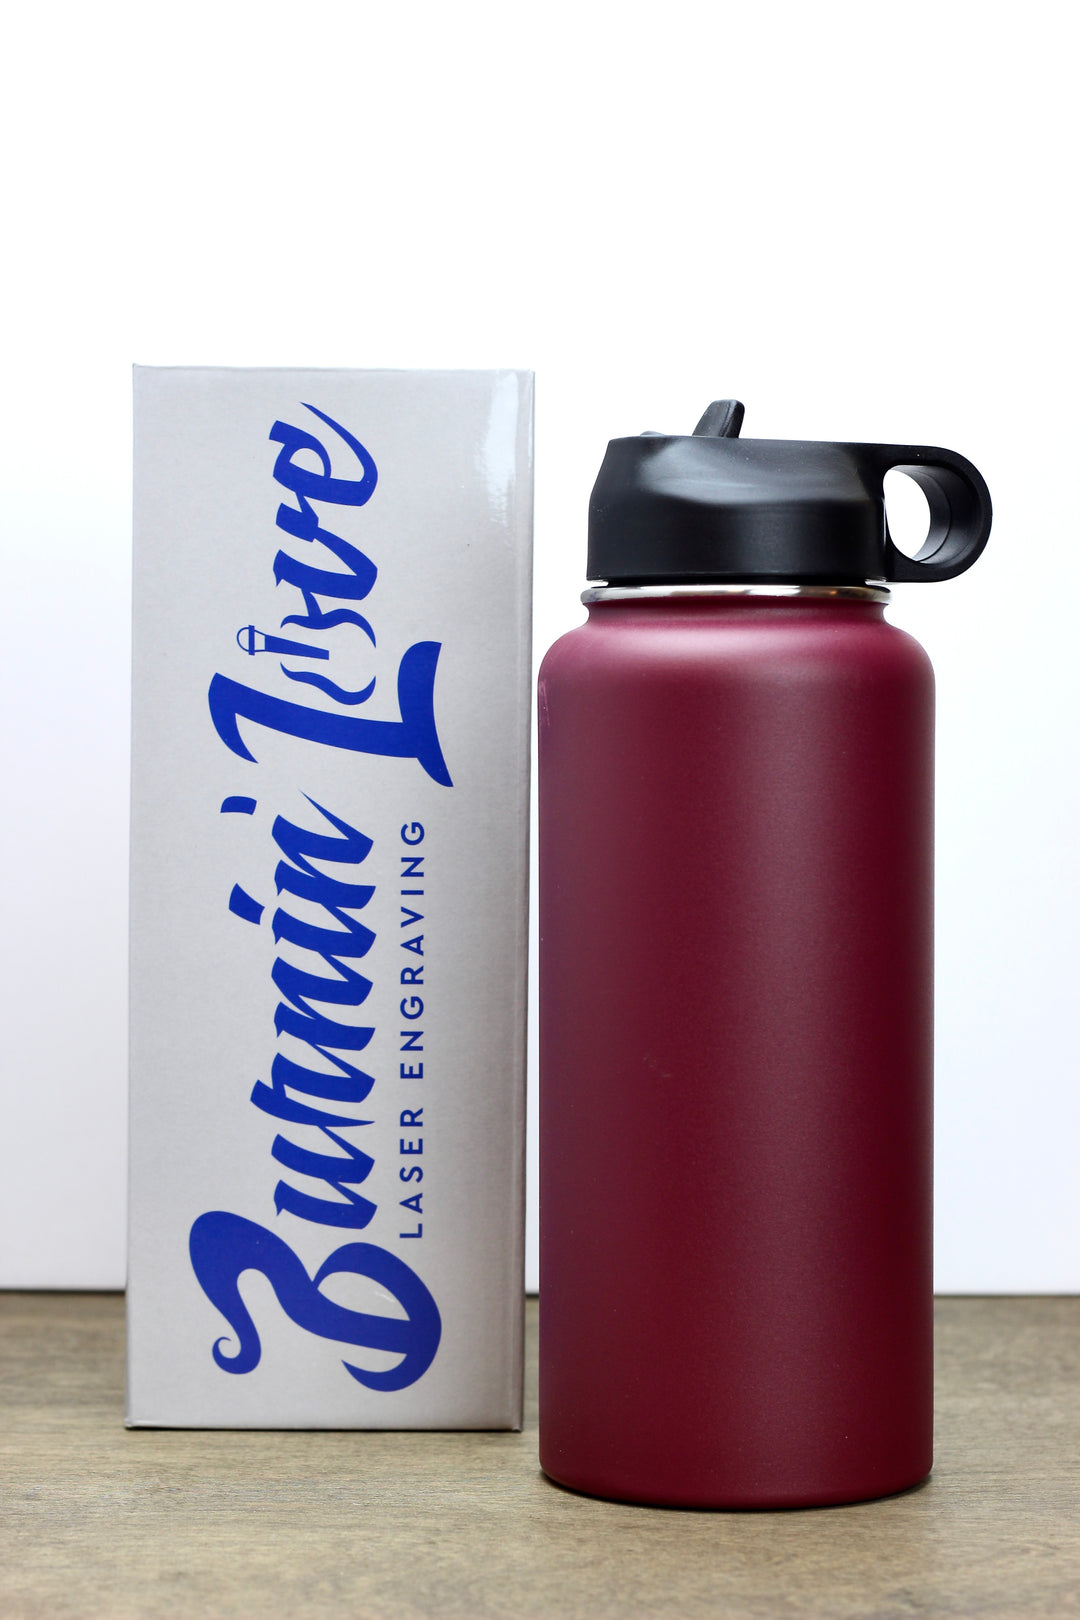 Custom Laser Engraved 26oz Rambler Water Bottle – Arcane Engraving